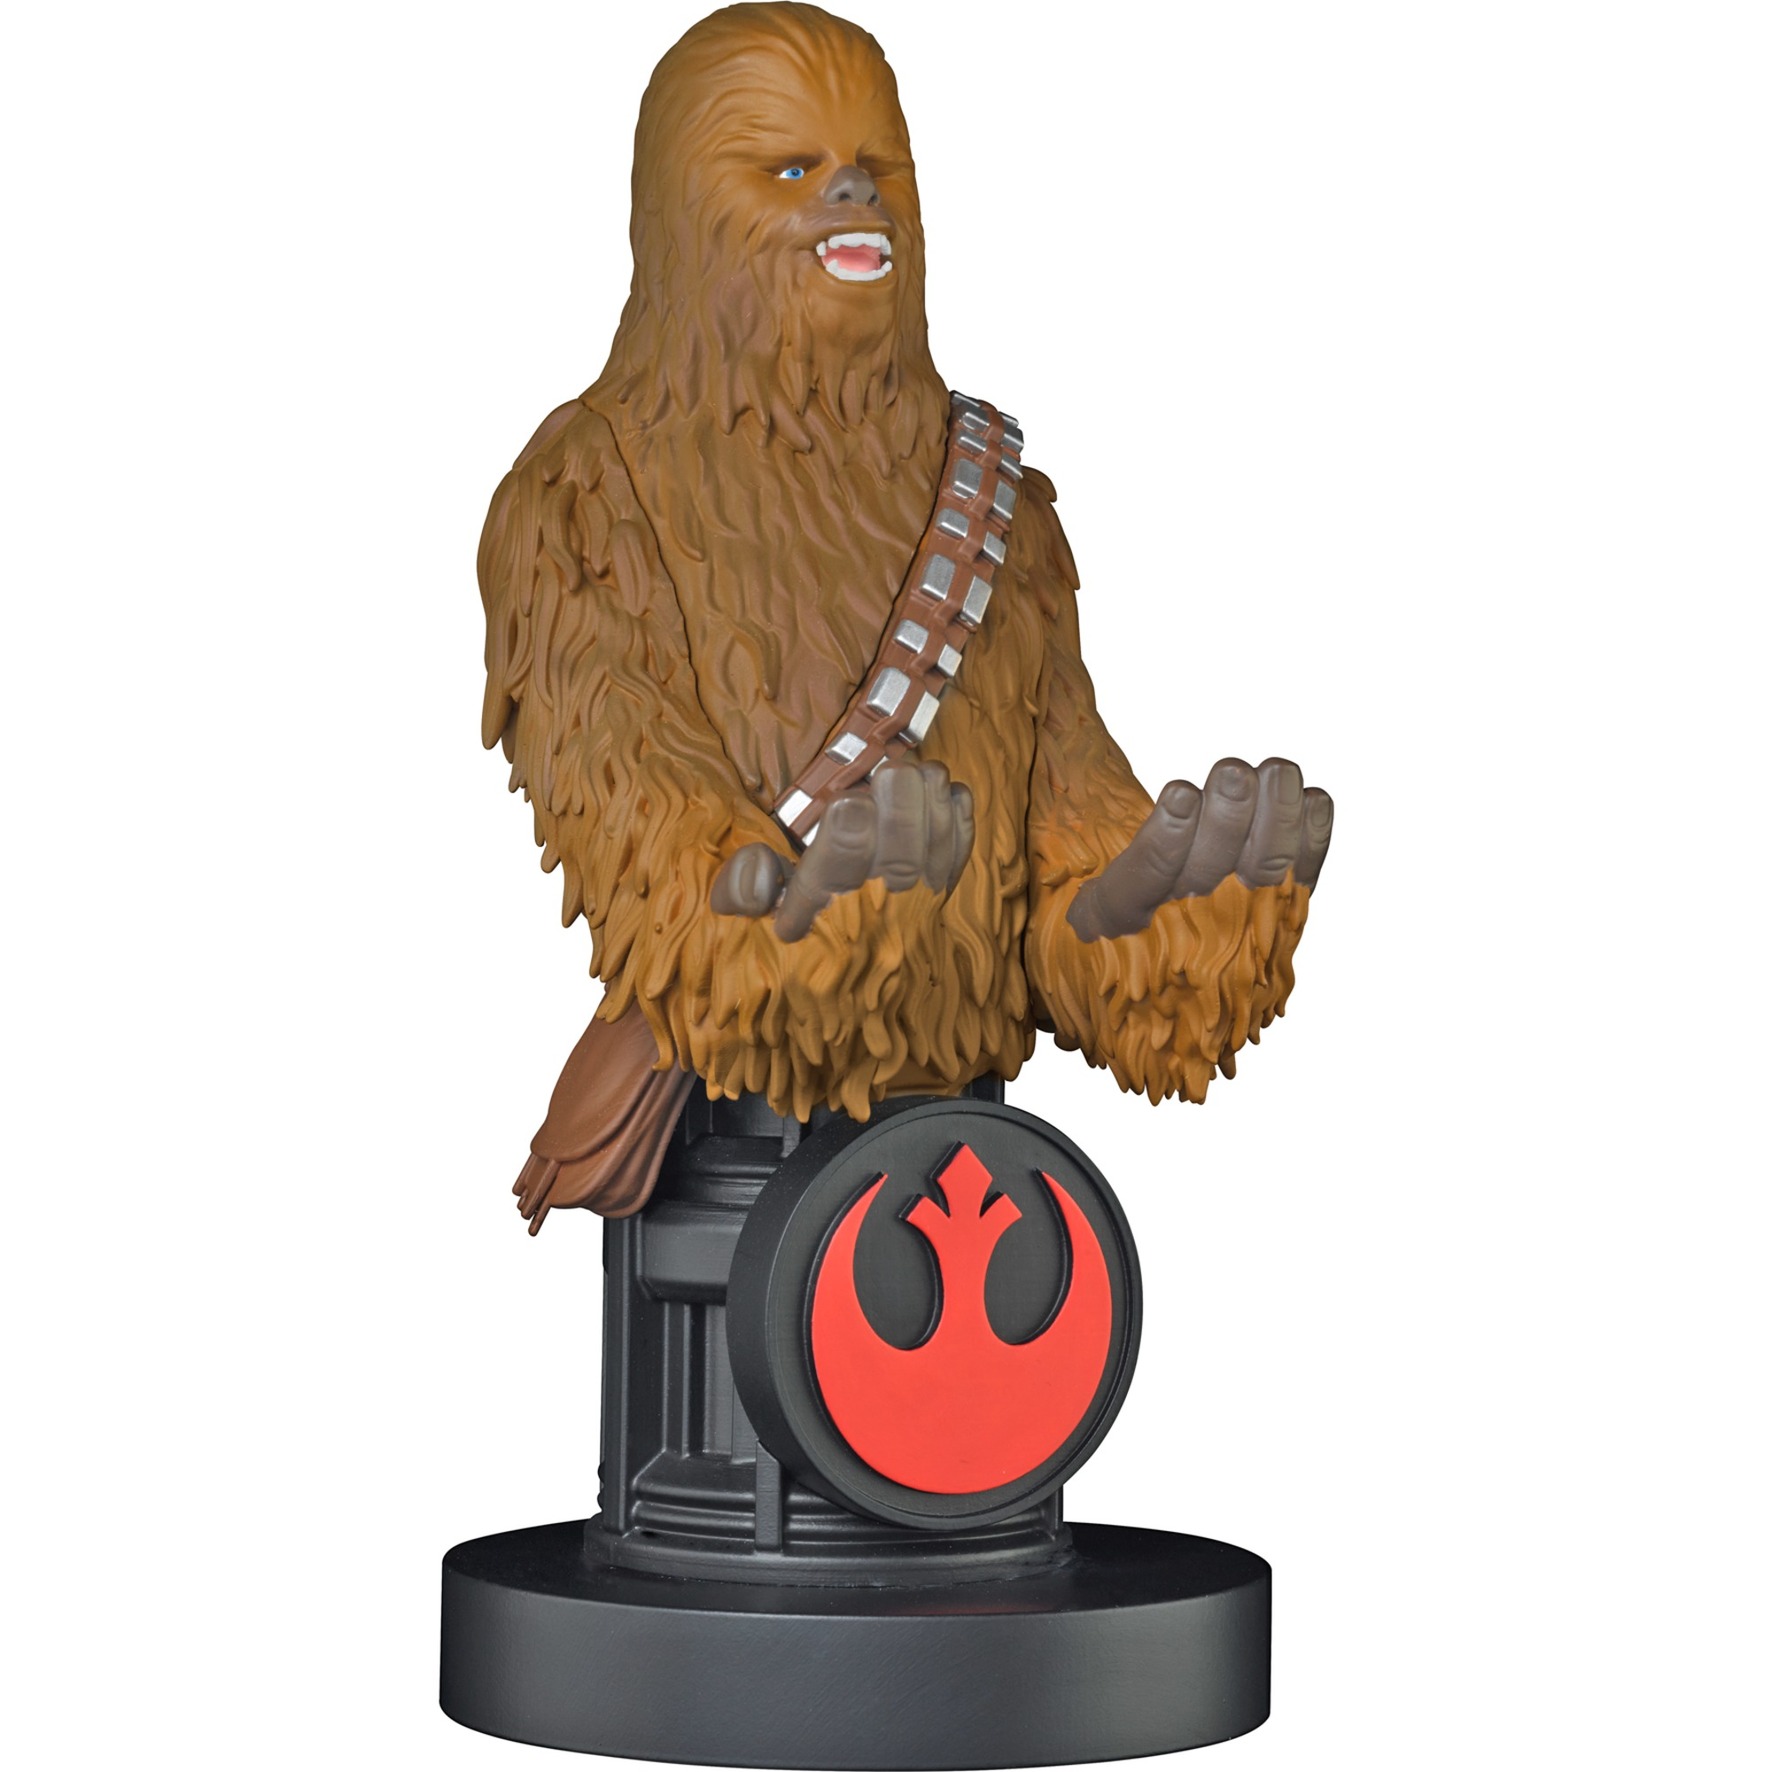 Image of Alternate - Star Wars Chewbacca, Halterung online einkaufen bei Alternate